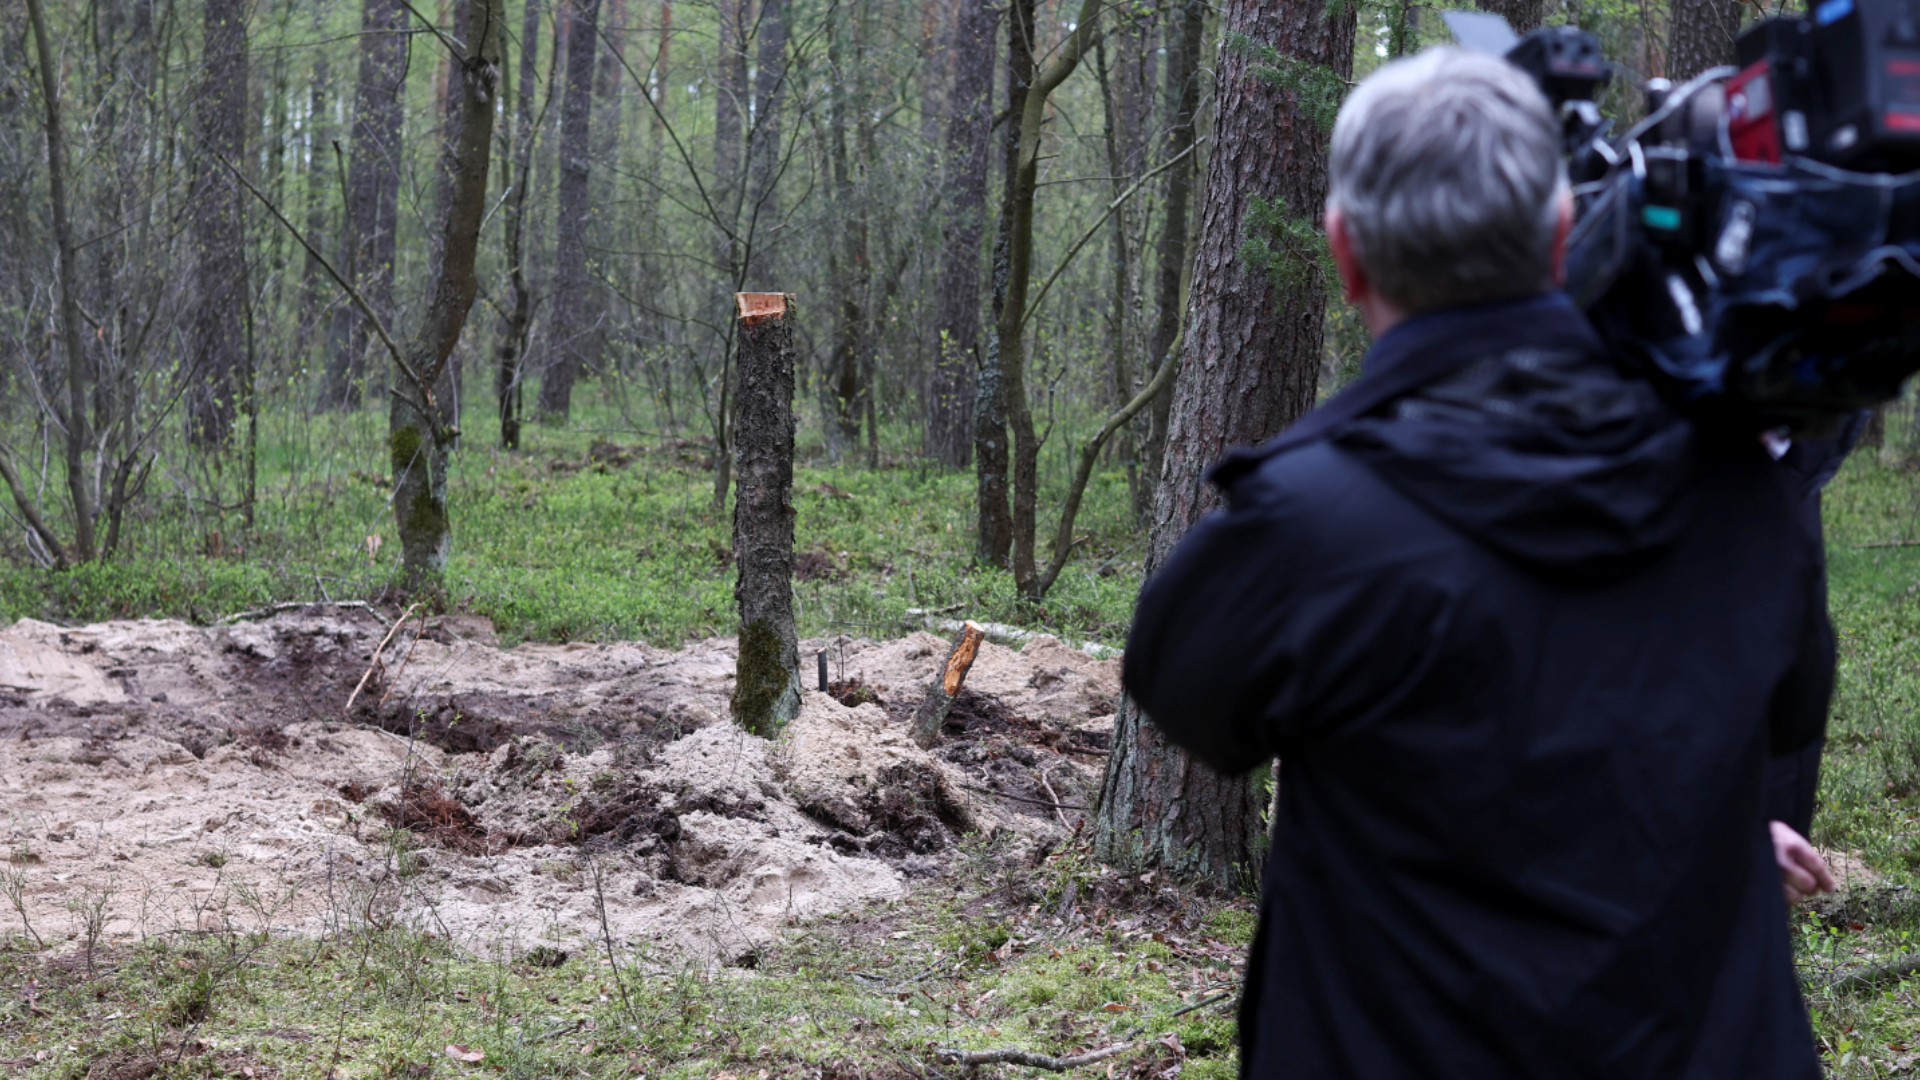 Ba Lan: Tìm thấy vật thể nghi là tên lửa, lo ngại hỏa lực chéo từ Ukraine - Ảnh 1.